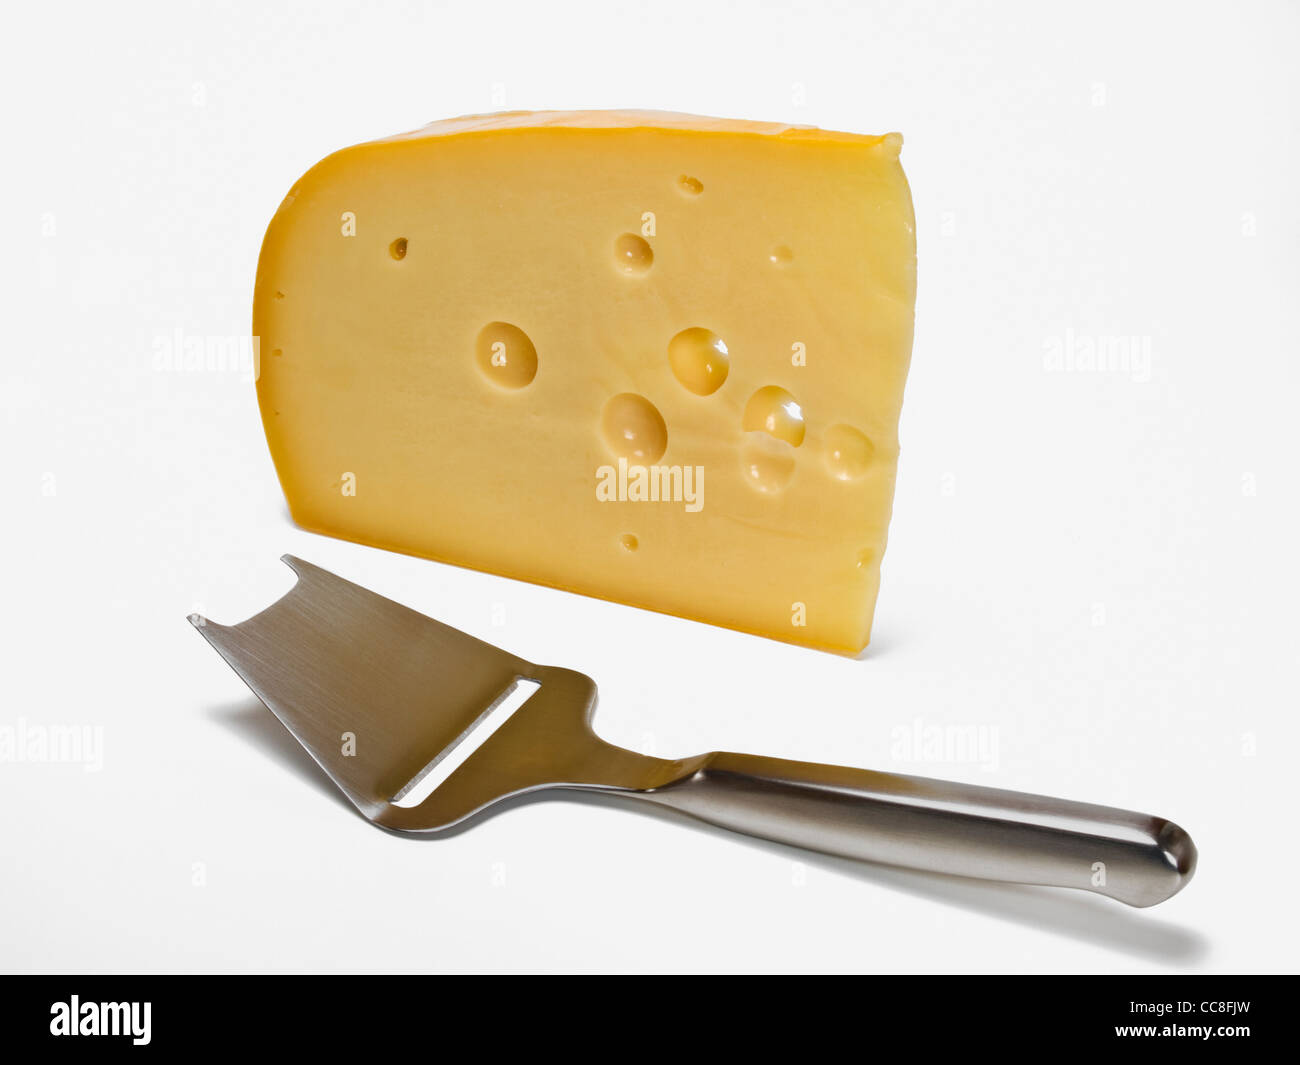 Rebanador de queso Imágenes recortadas de stock - Alamy